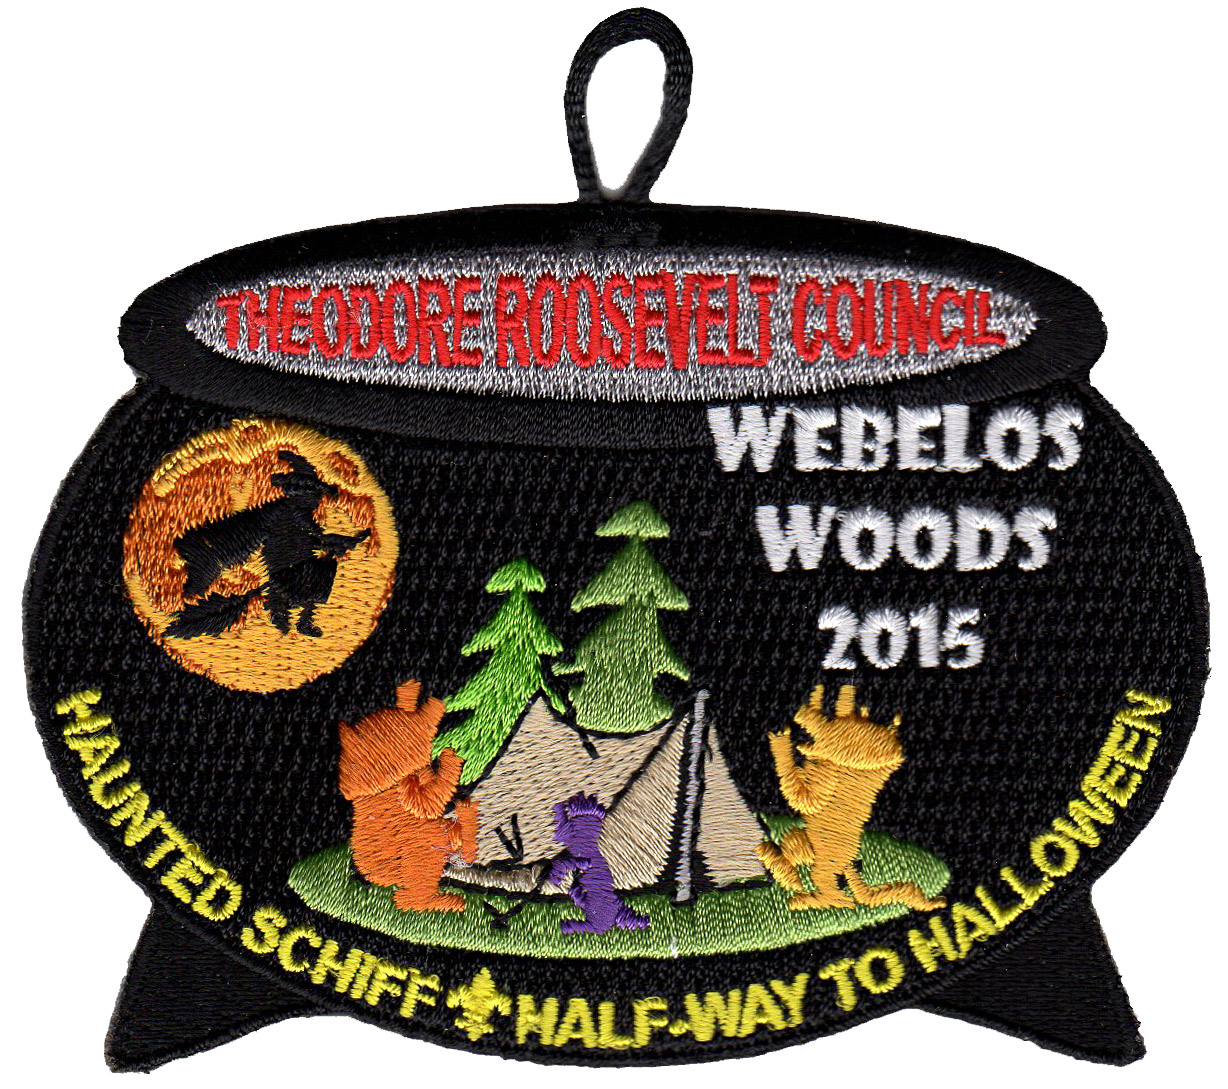 Webelos Woods 2015